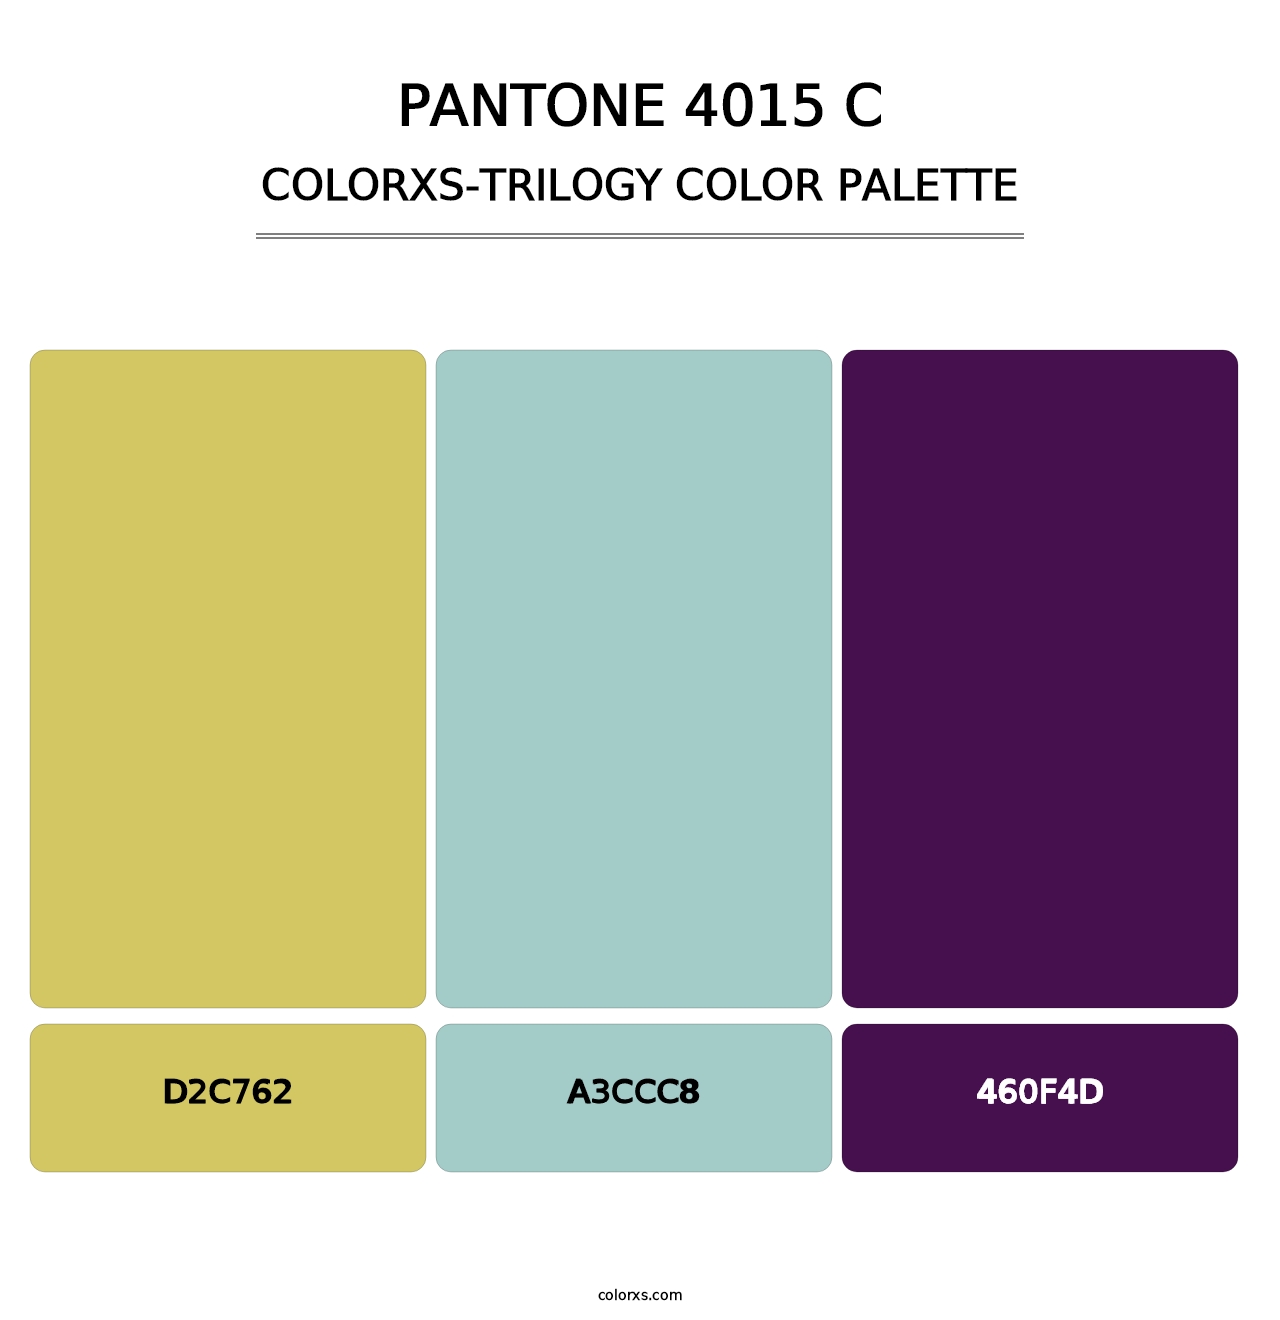 PANTONE 4015 C - Colorxs Trilogy Palette